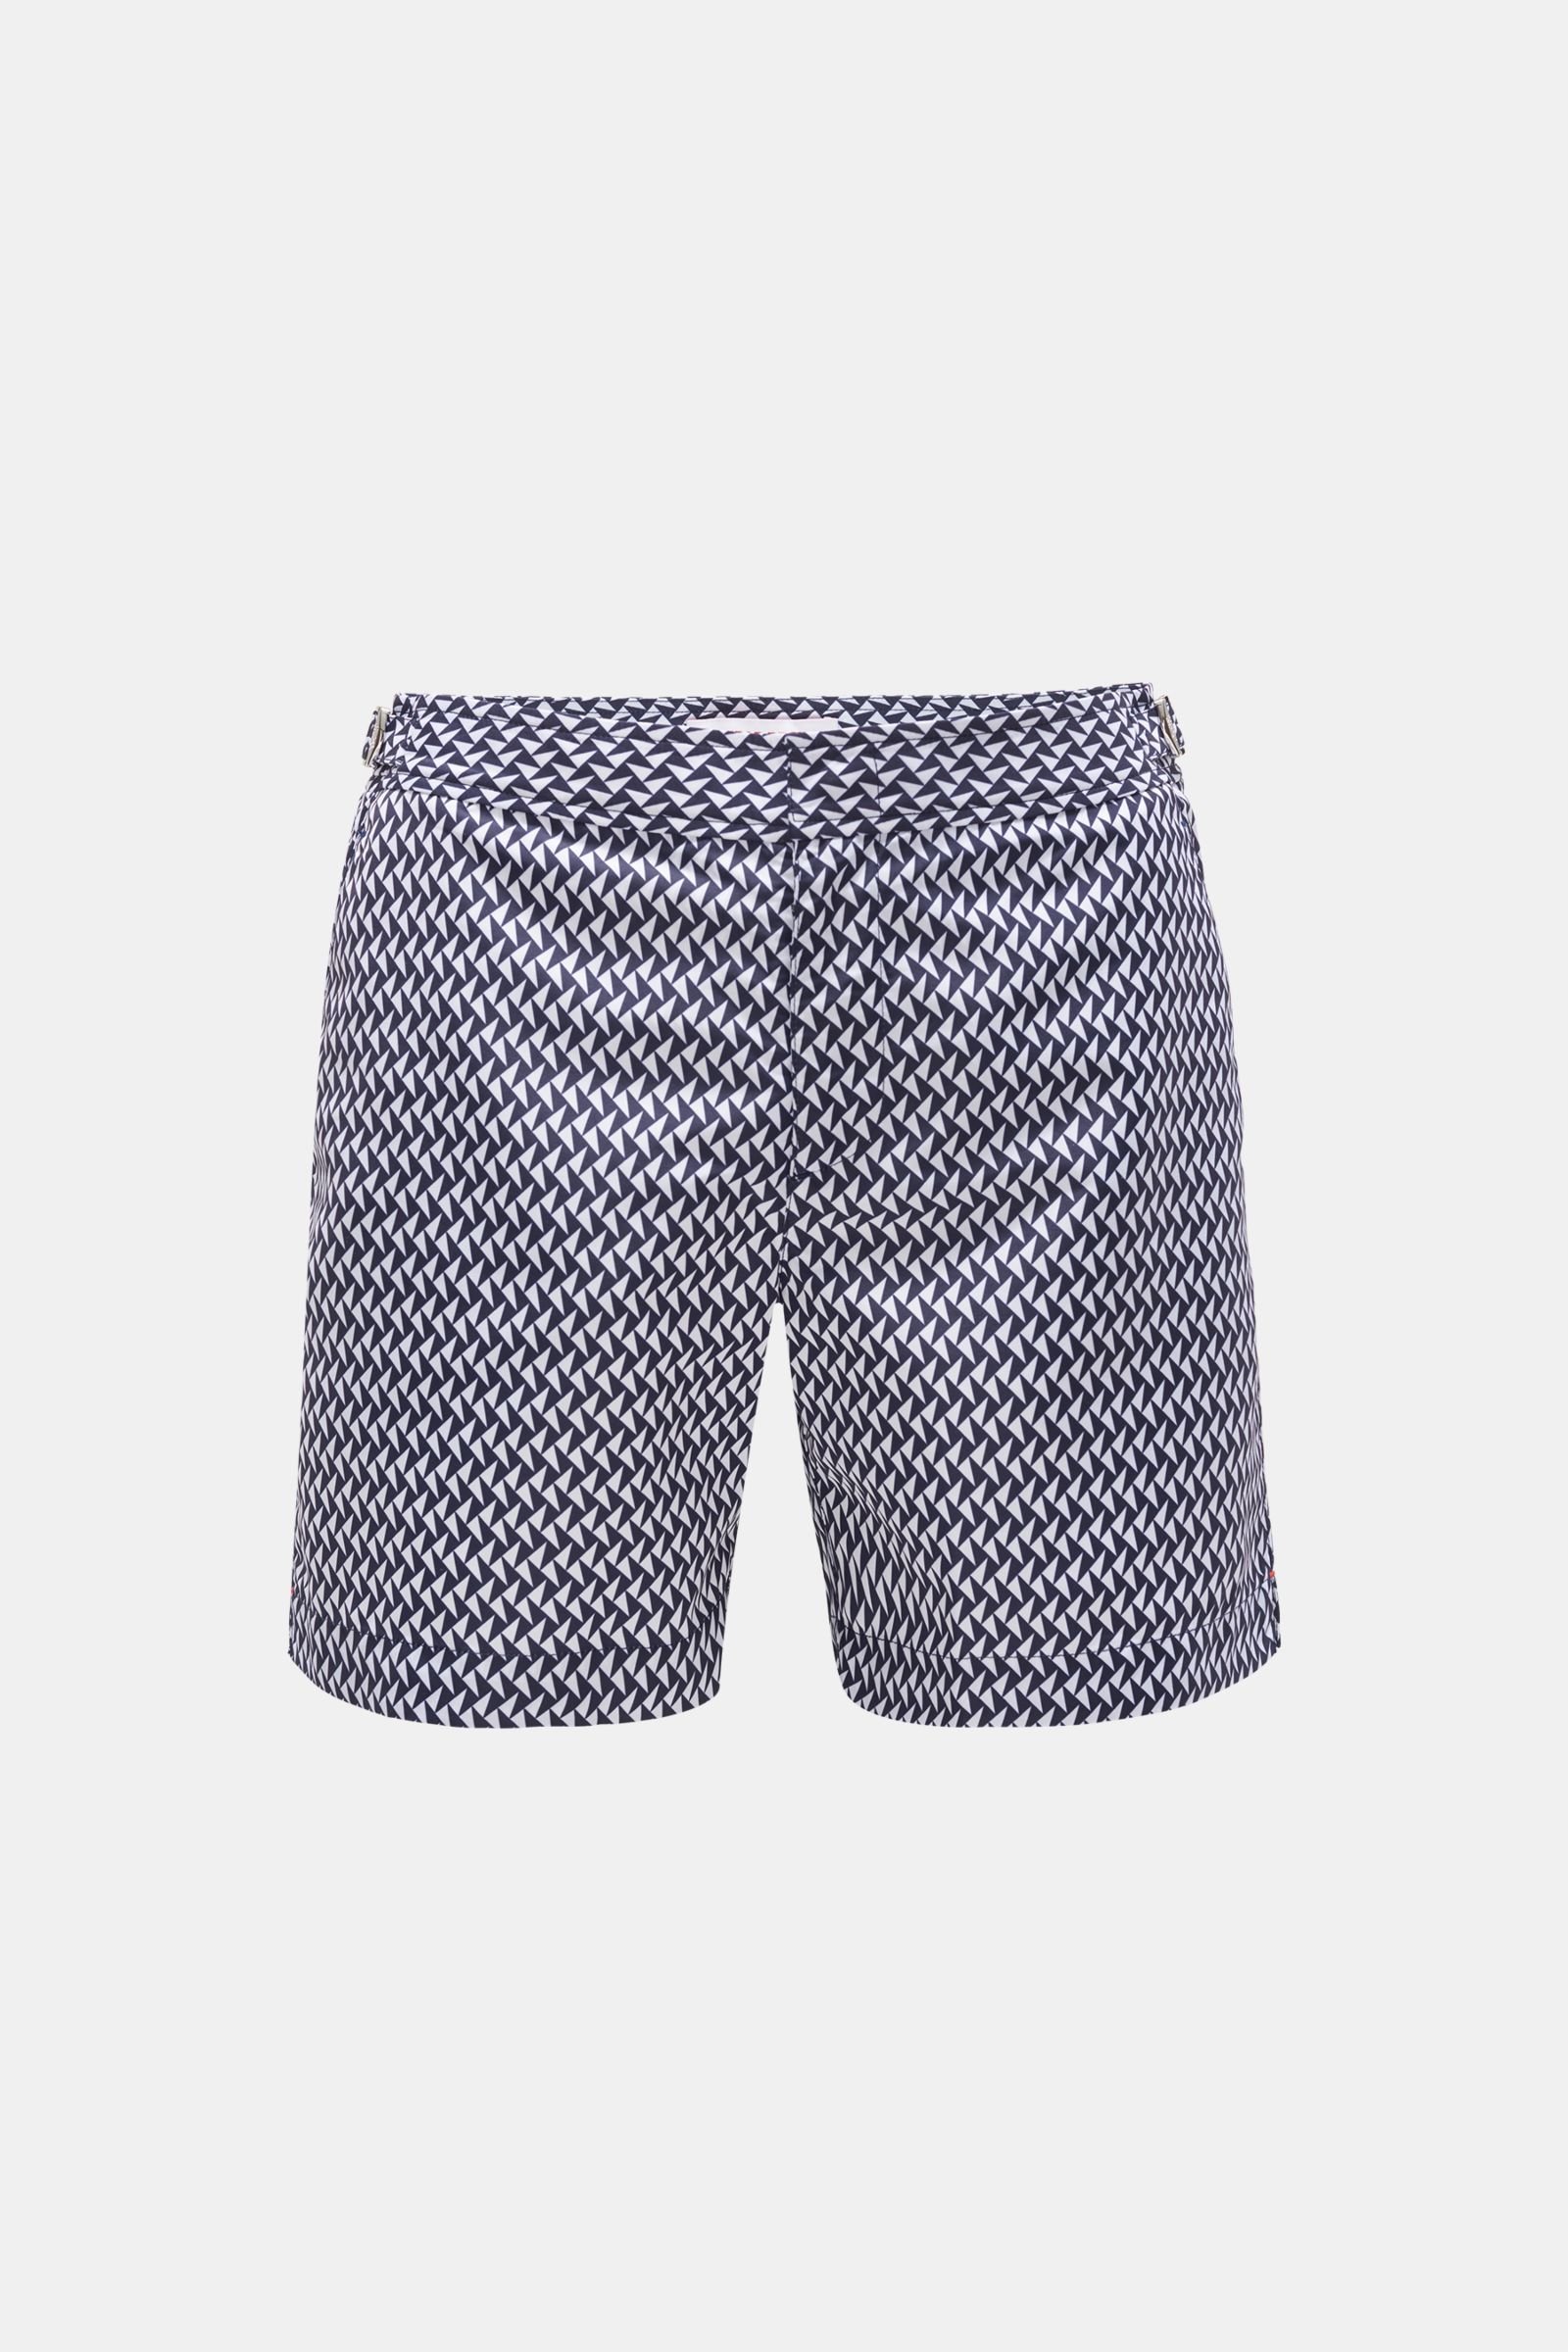 Swim shorts 'Bulldog' navy/white patterned